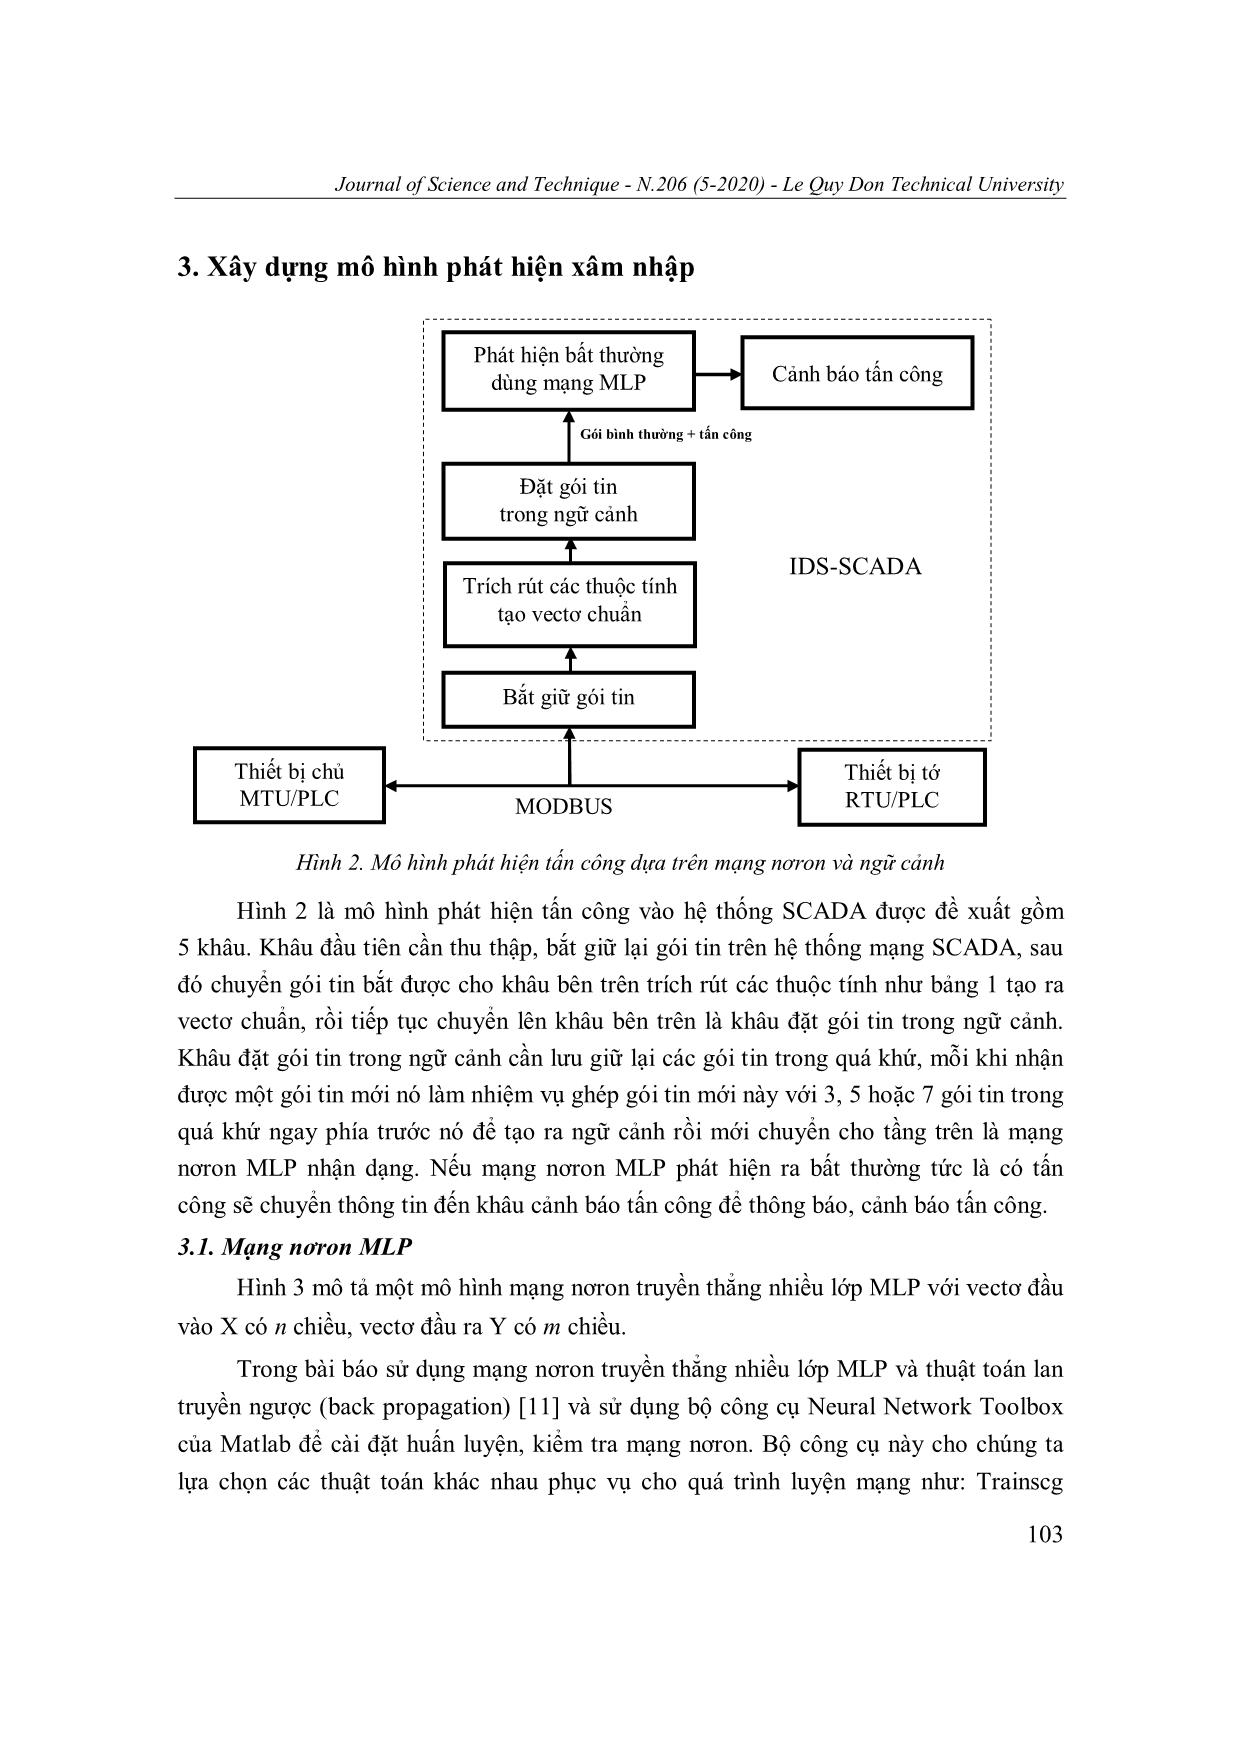 Một phương án tổ chức ngữ cảnh dữ liệu cho bộ phát hiện tấn công mạng scada sử dụng mạng nơron mlp trang 6